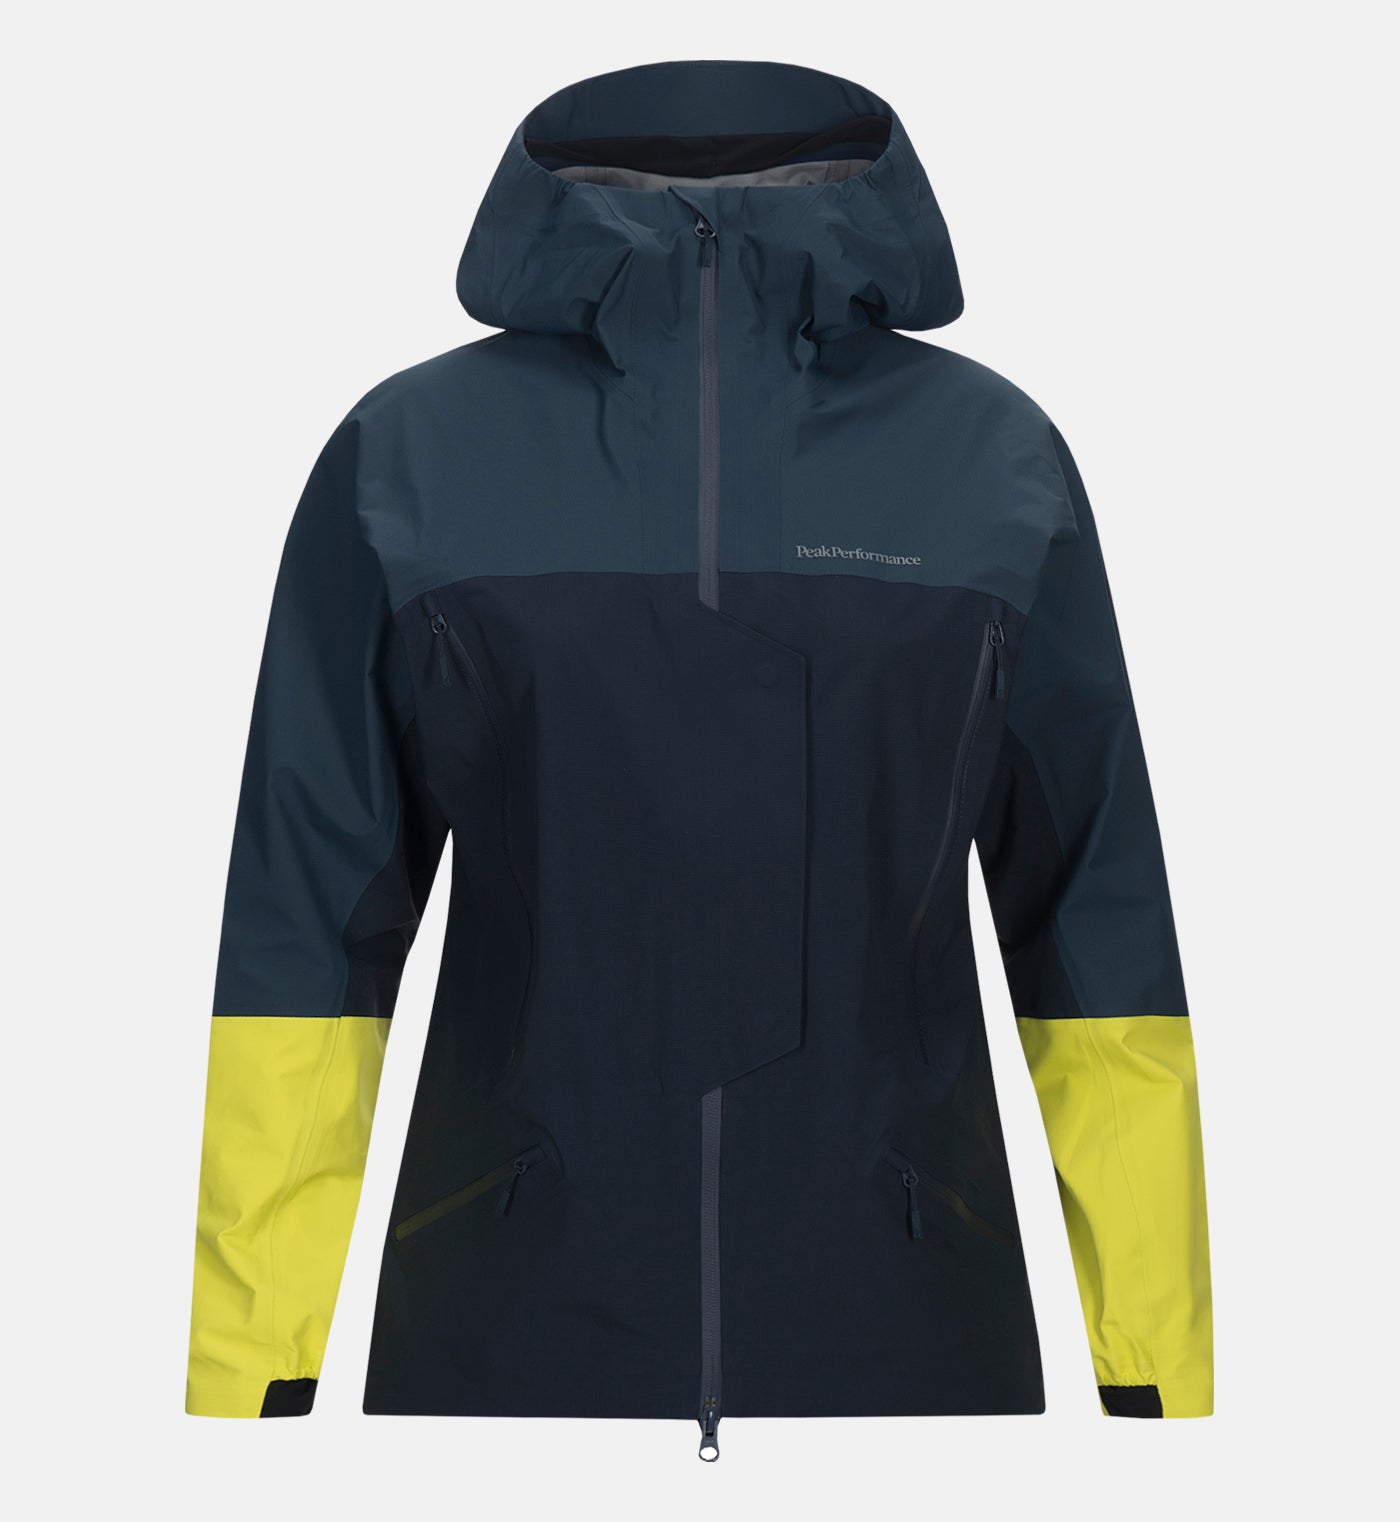 waterproof hiking jacket